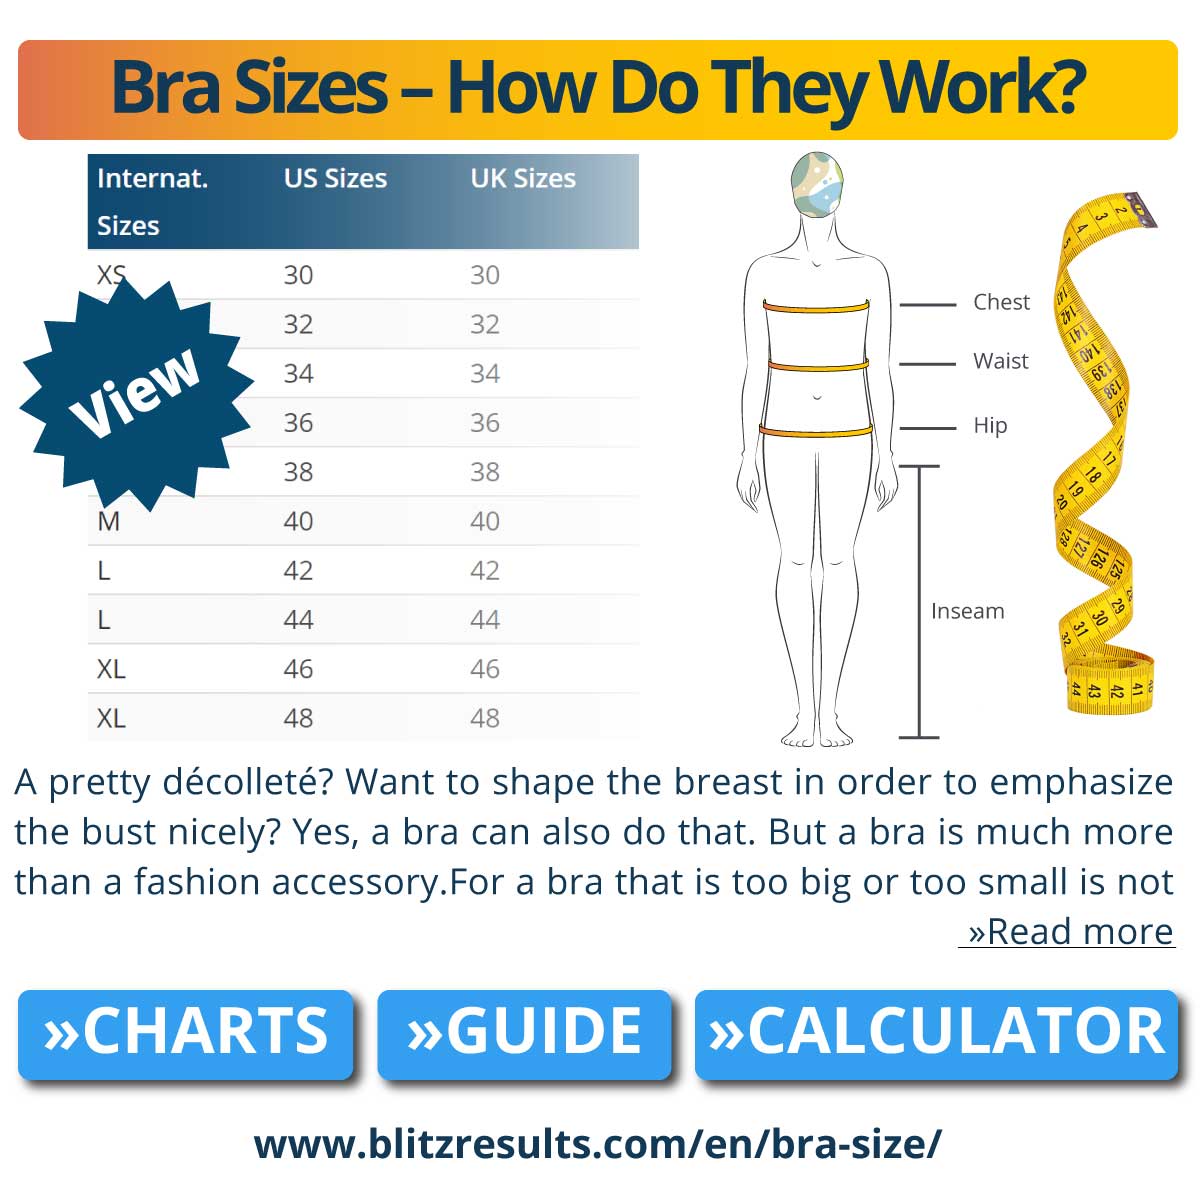 Bra Sizes - How Do They Work?